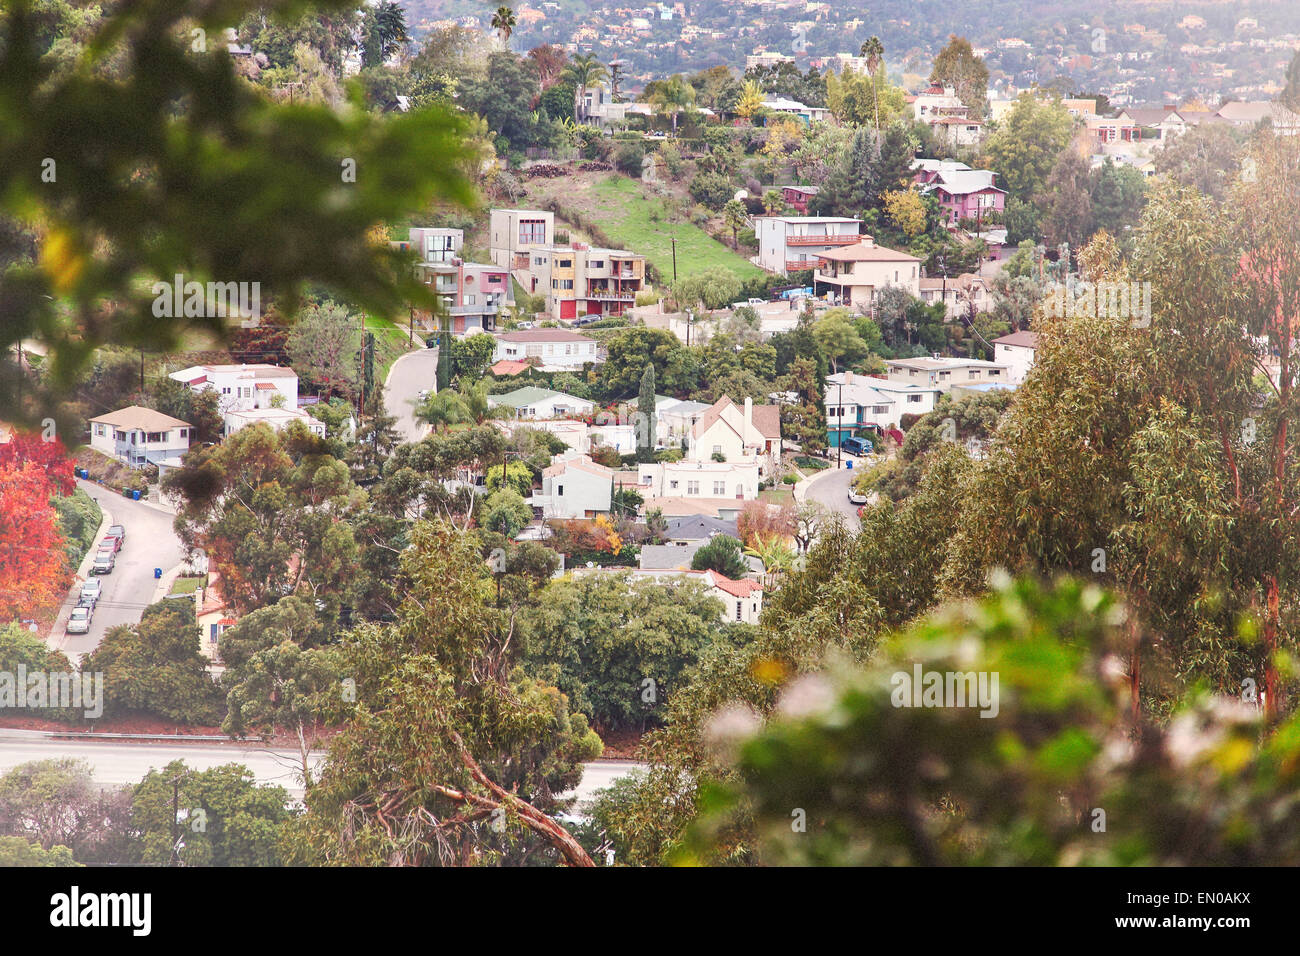 Il trendy quartiere collinare di Silverlake, sul lato est di Los Angeles, girato in teleobiettivo con profondità di campo ridotta. Foto Stock